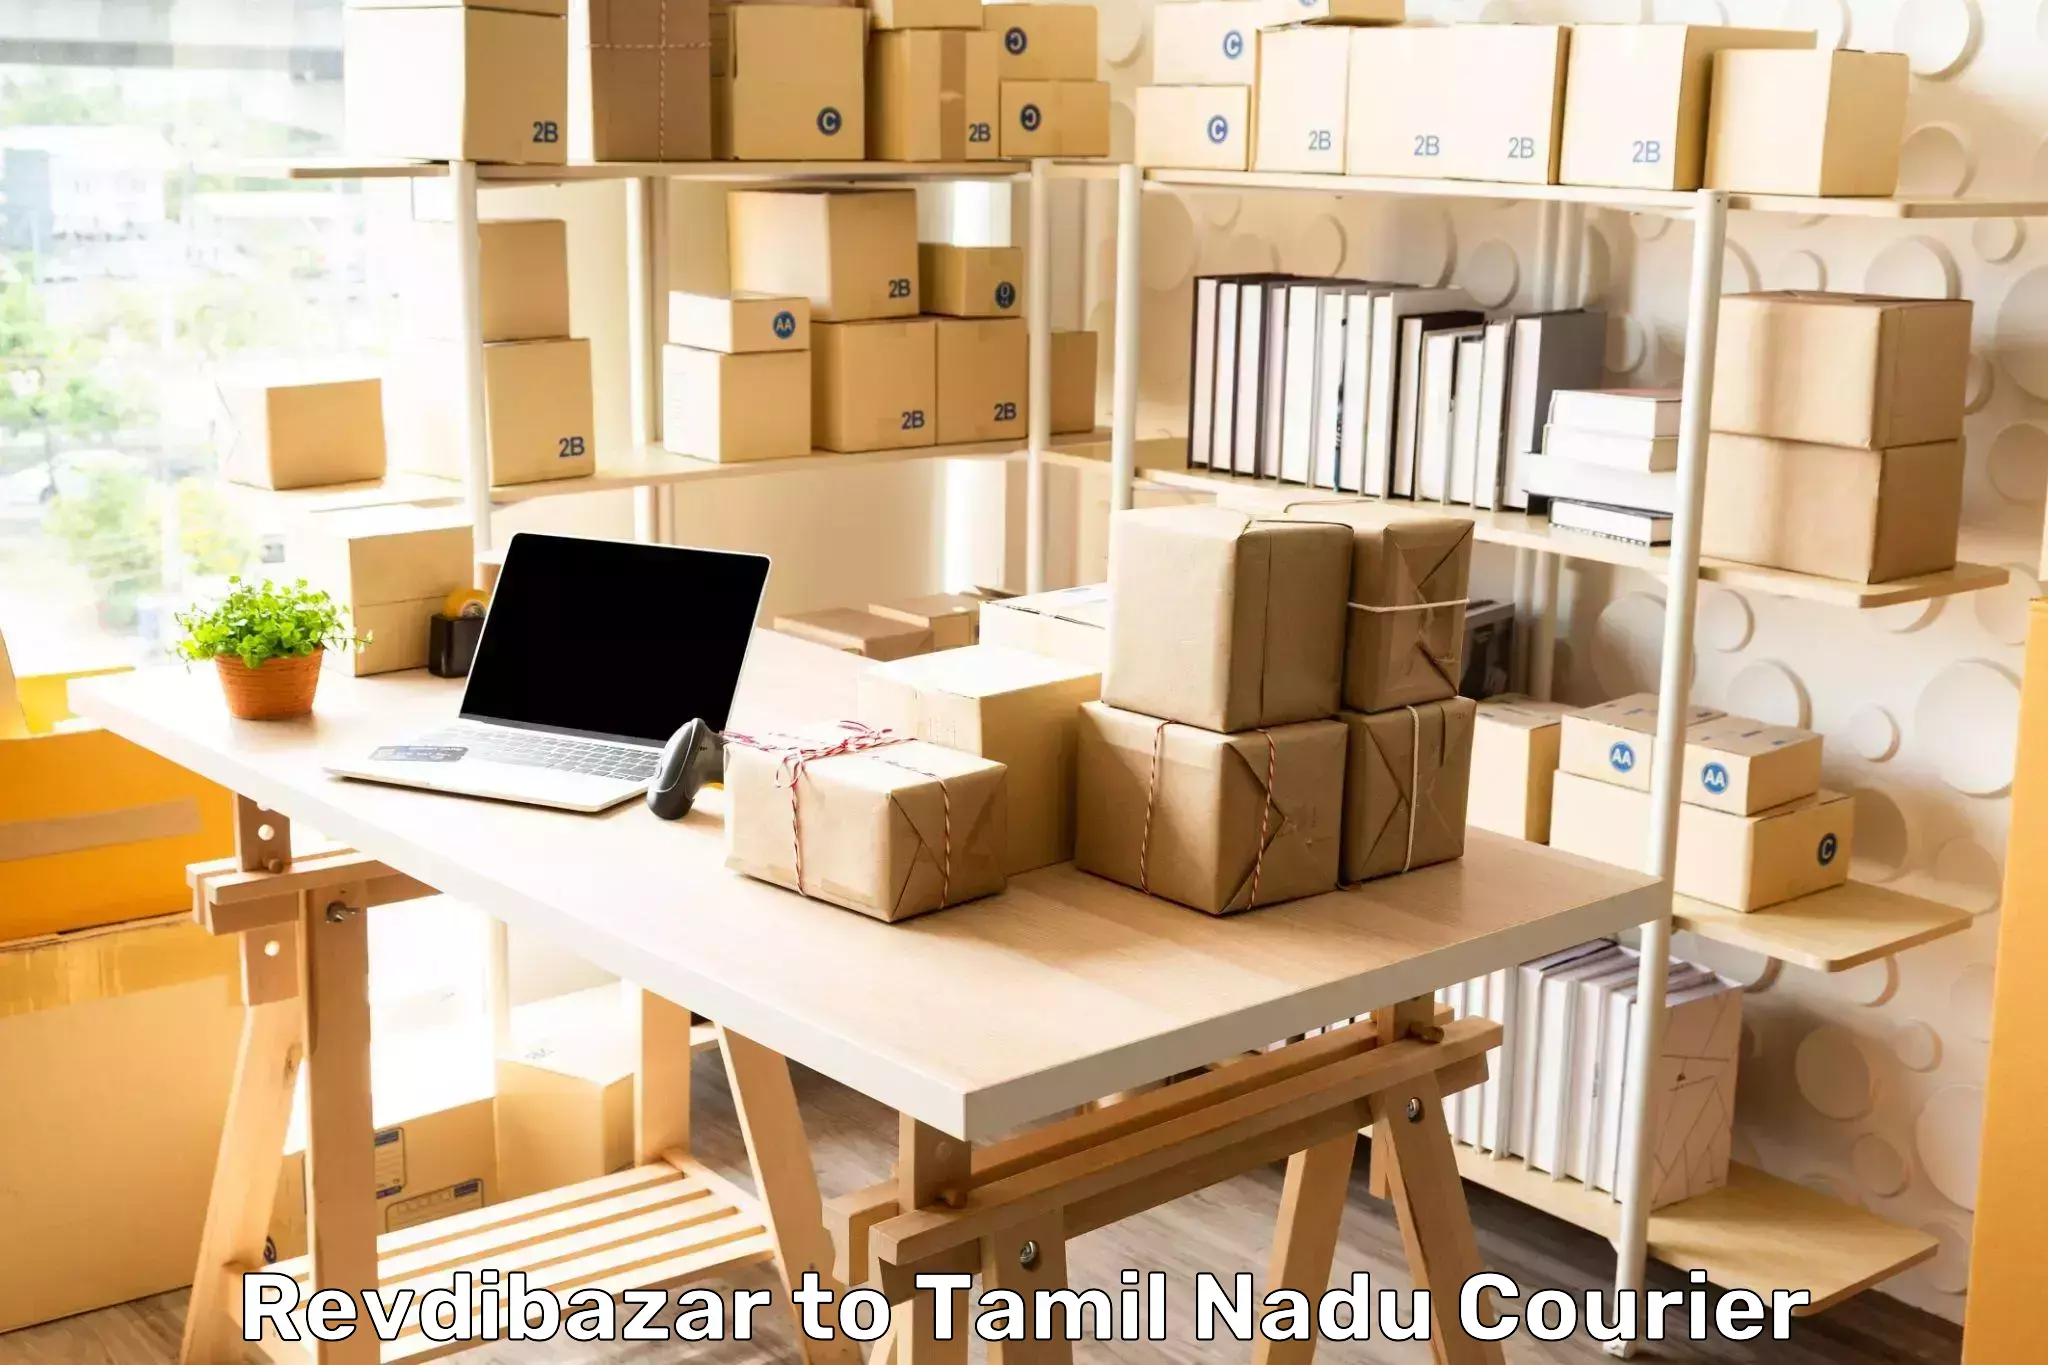 Digital courier platforms Revdibazar to Tamil Nadu